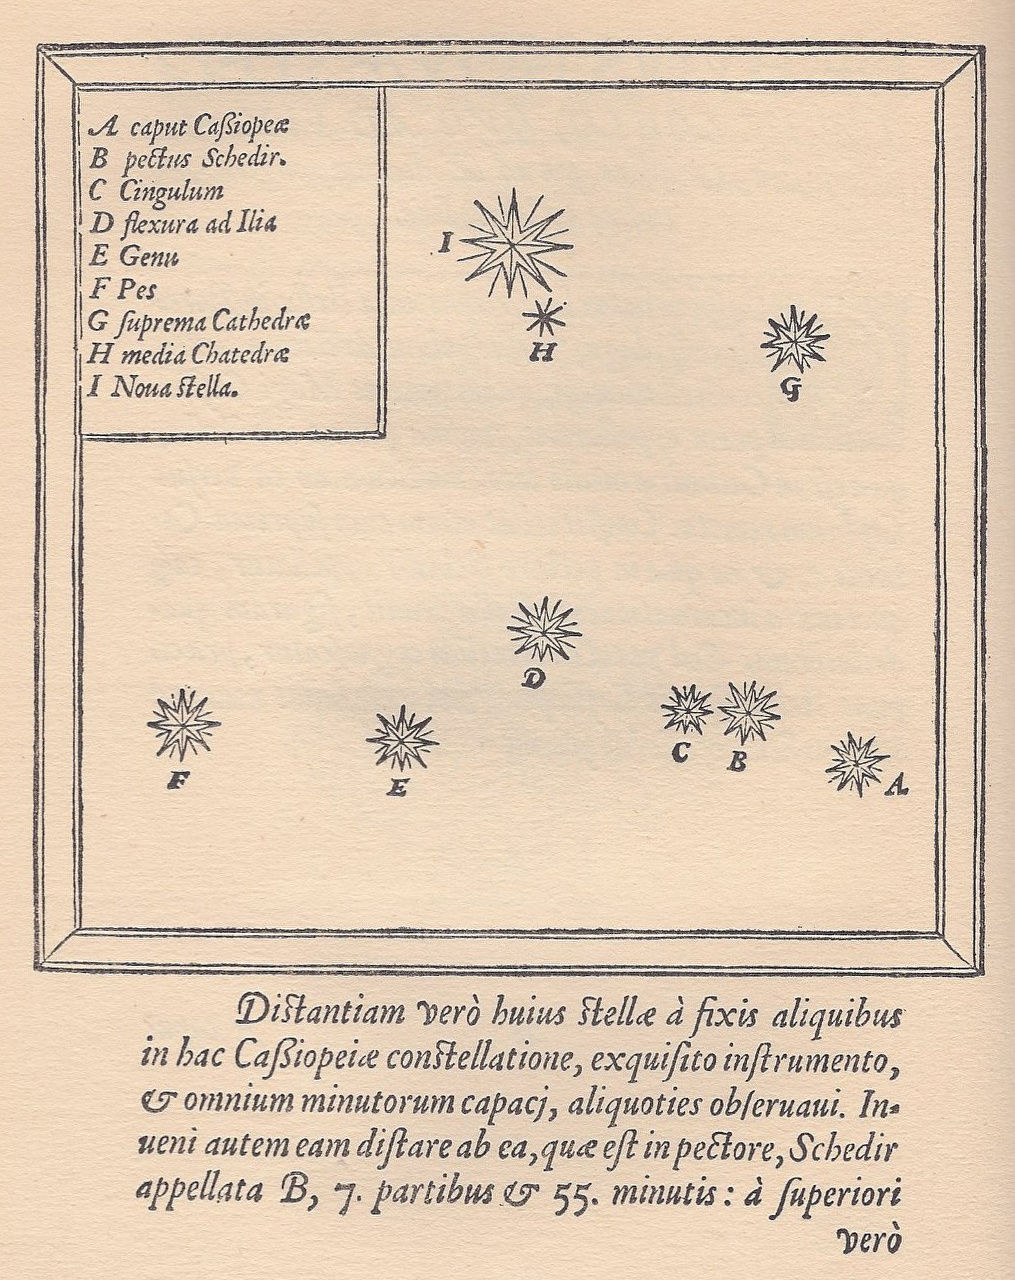 De waarneming van de supernova in het sterrenbeeld Cassiopeia door Tycho Brahe
